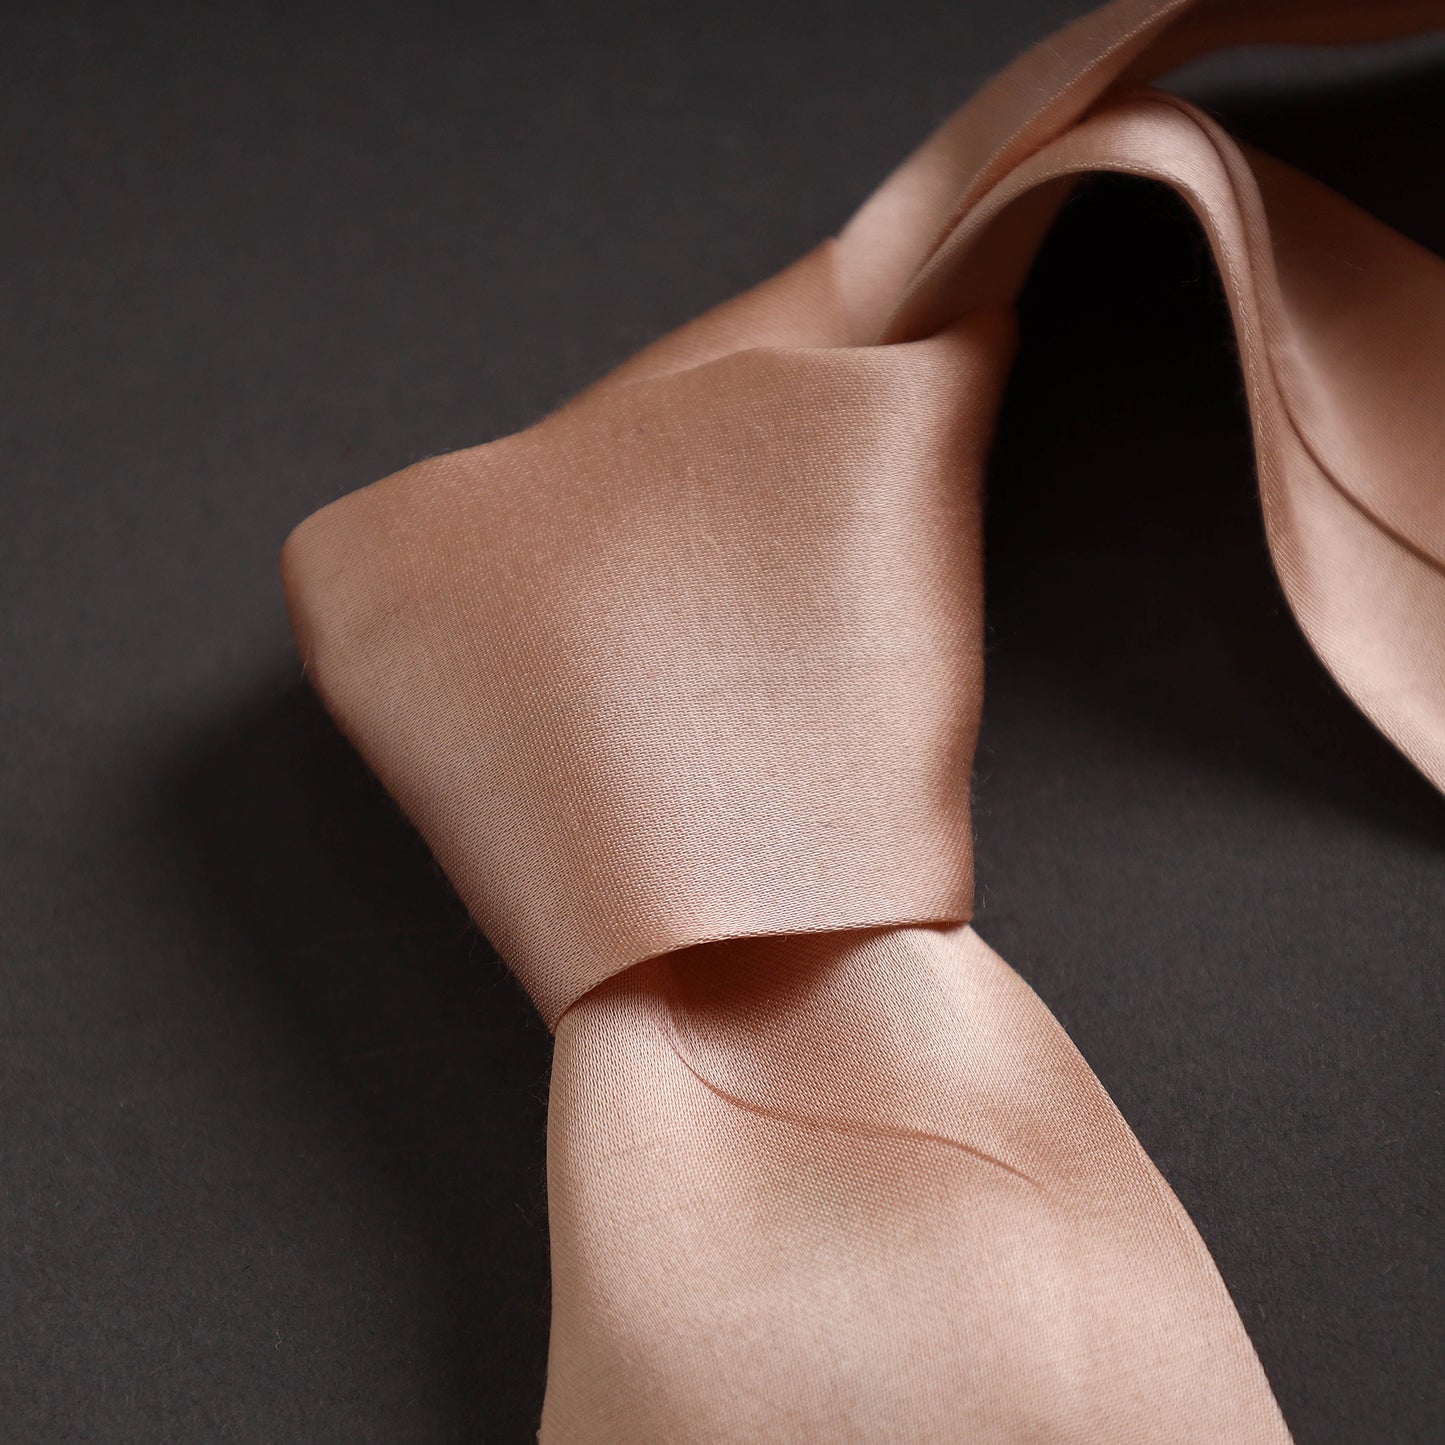 Plain Modal Silk Handmade Necktie for Men